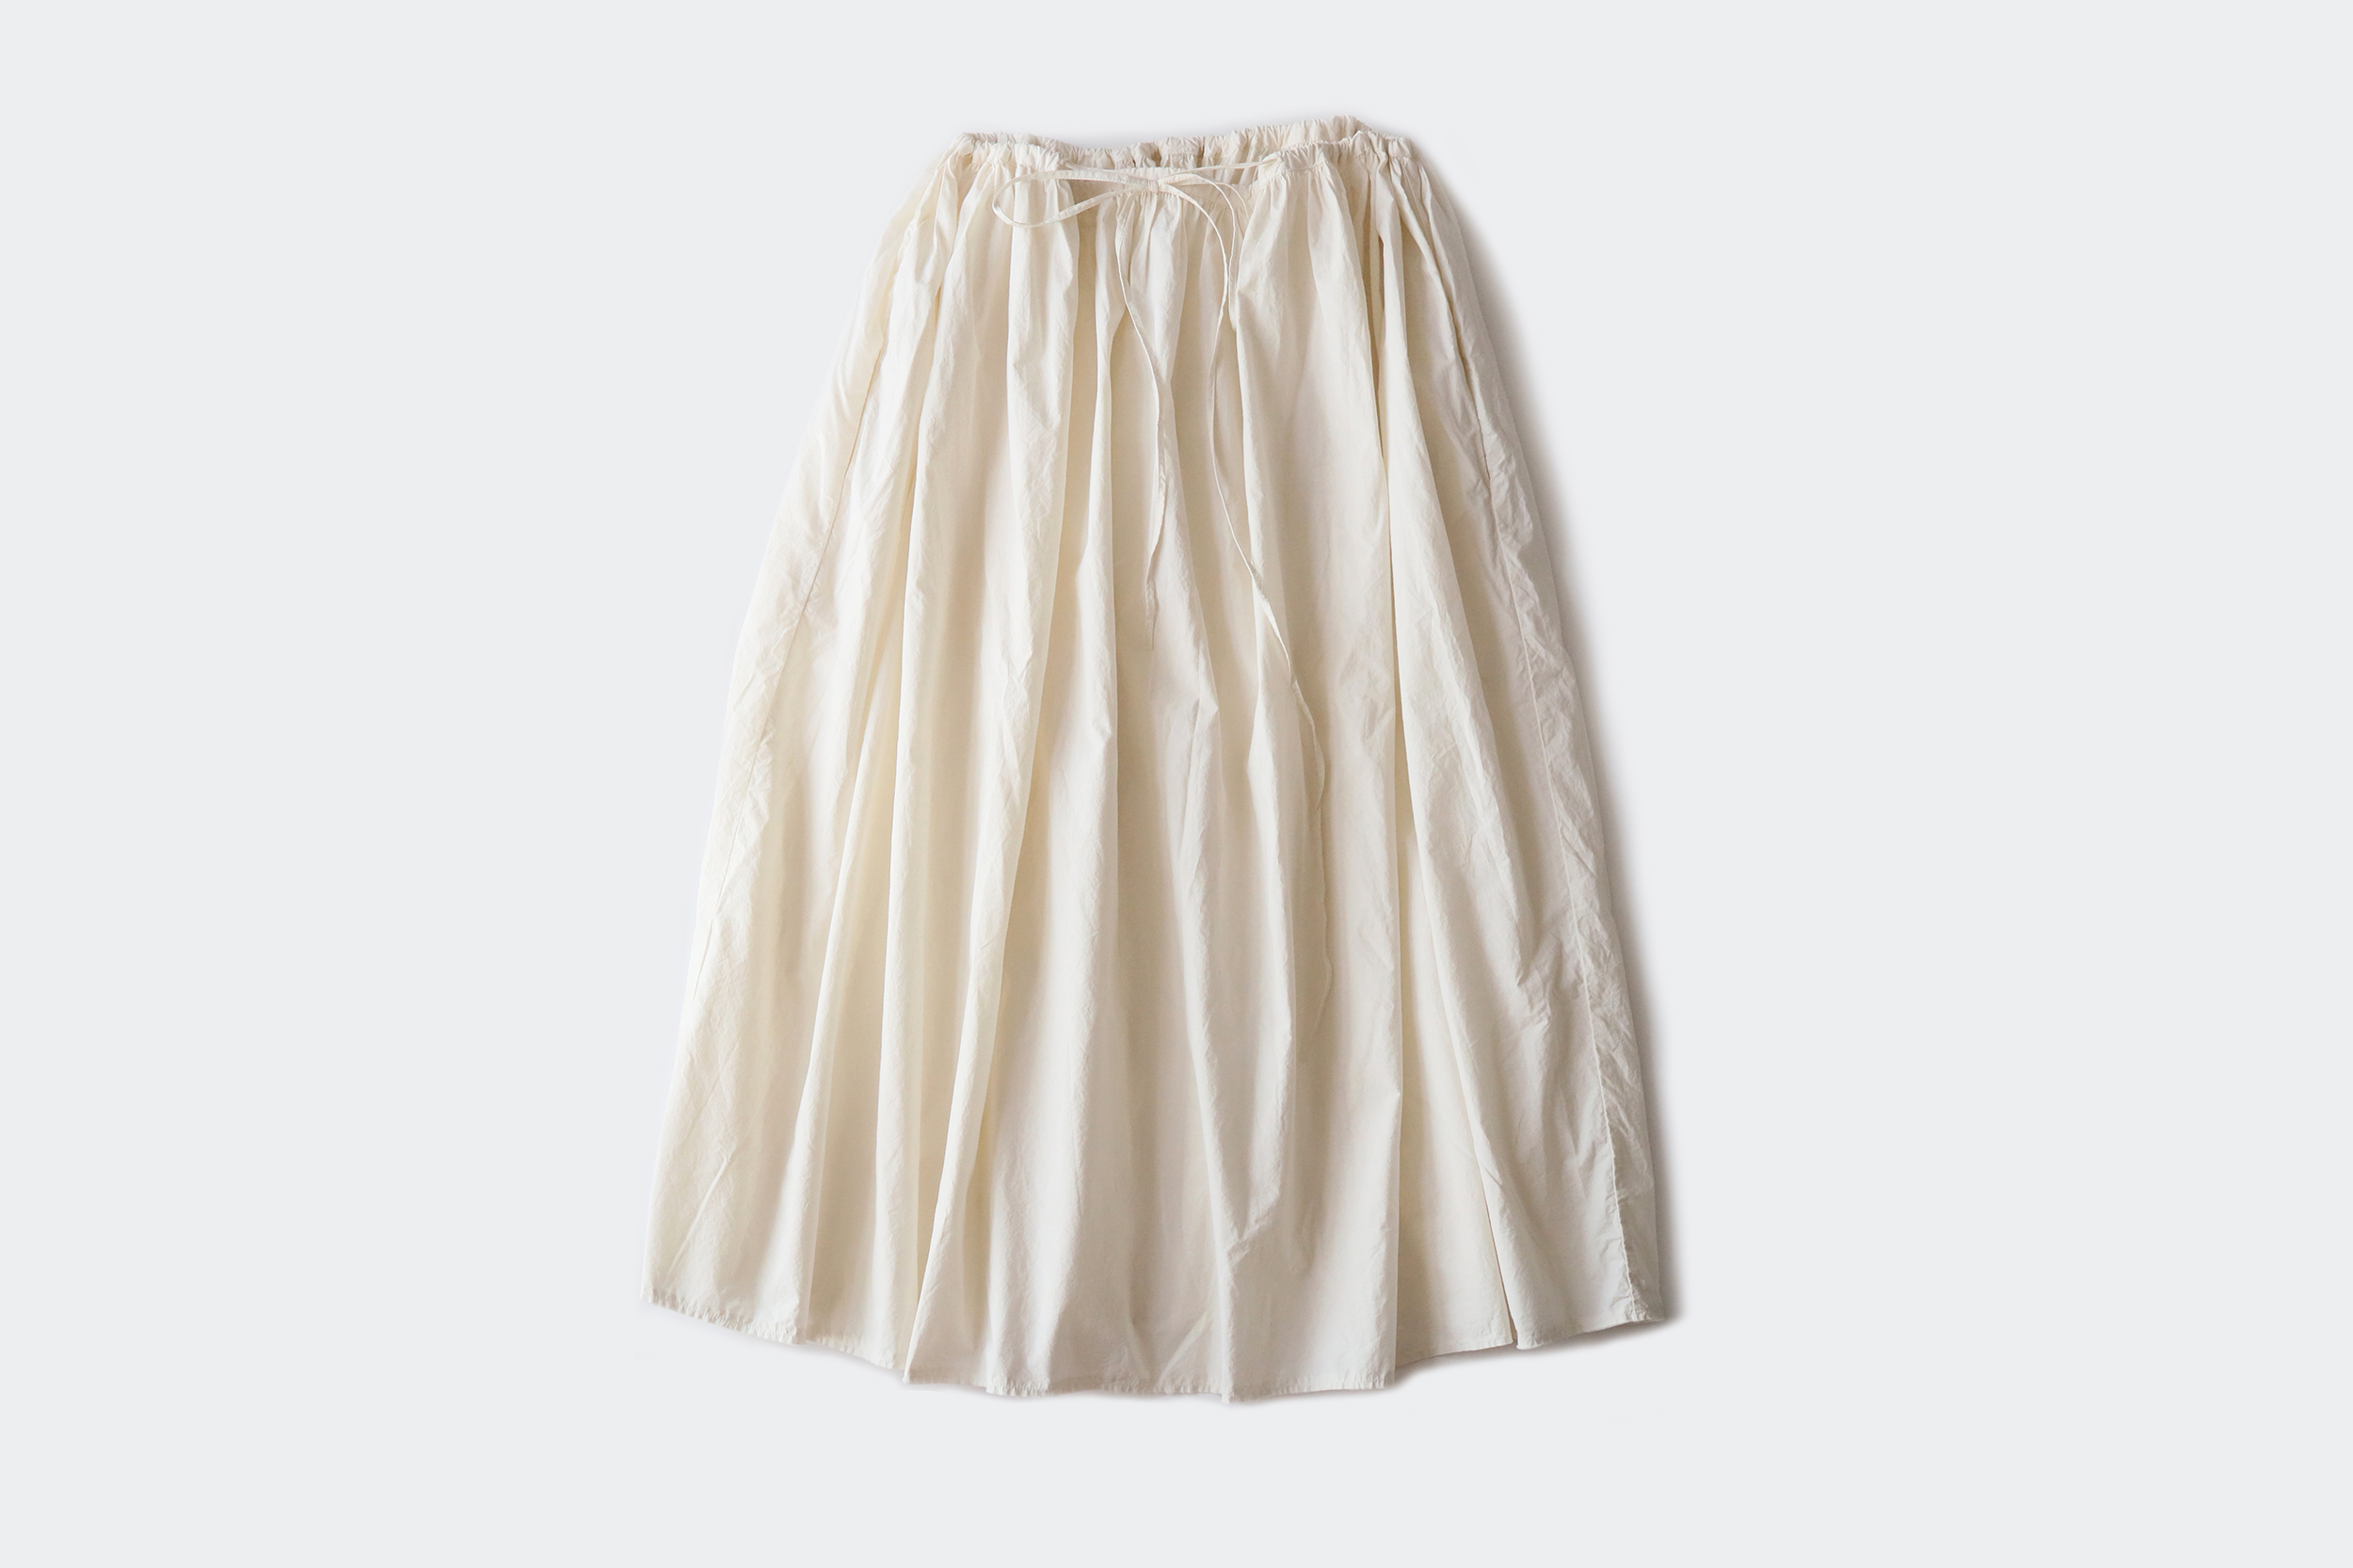 Manuelle Guibal  Drawstring skirt